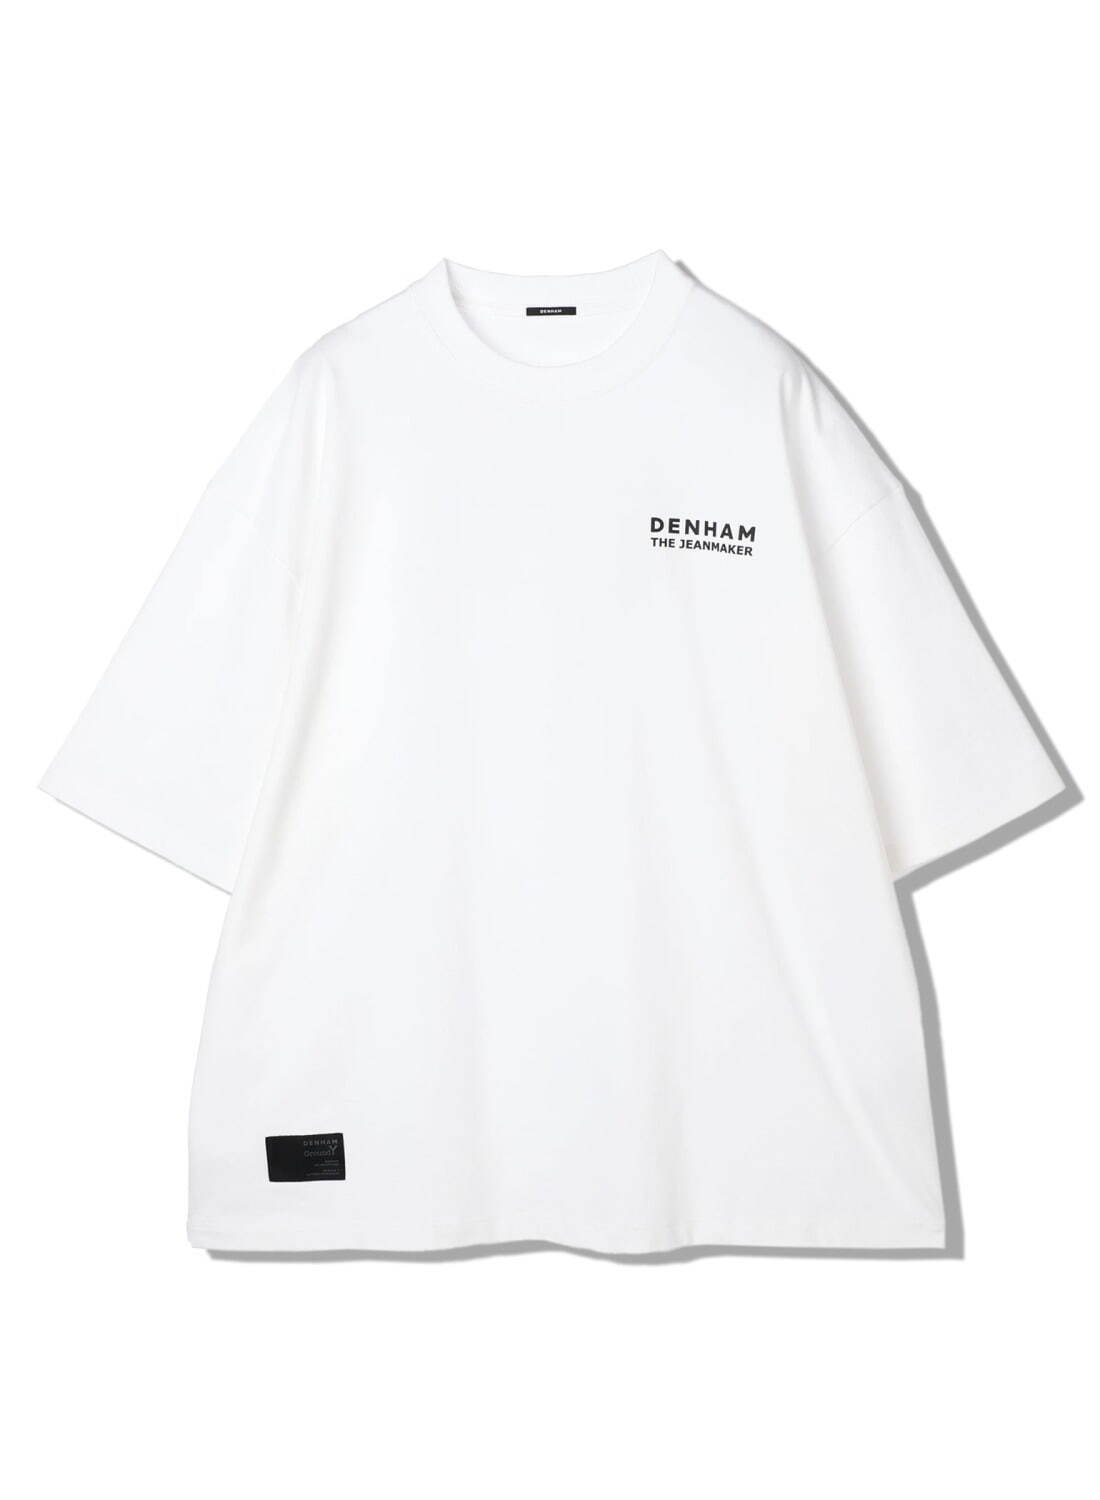 ジャンボTシャツ 19,800円